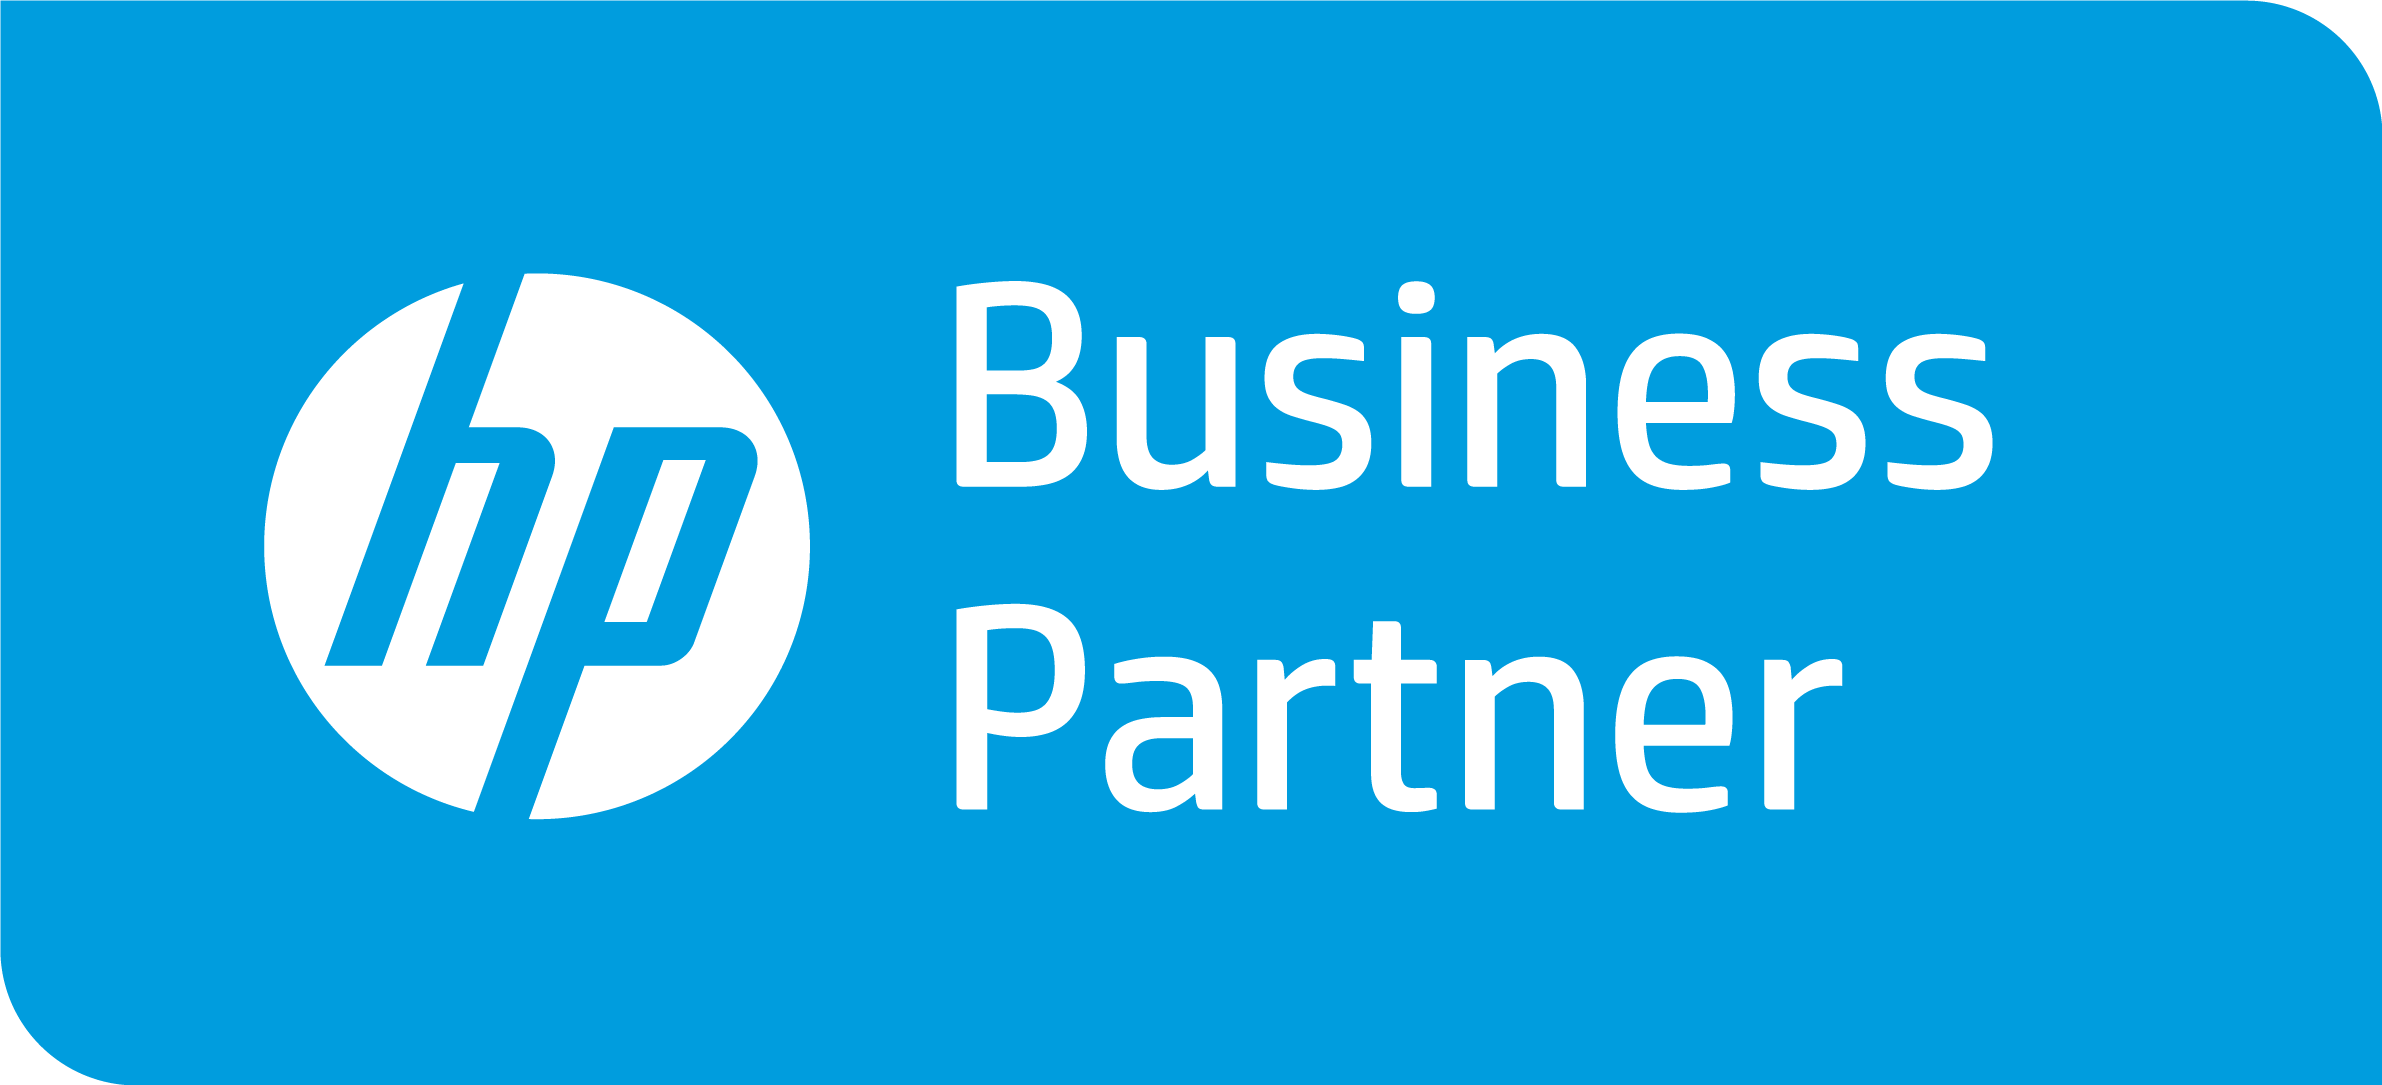 CHRONO INFORMATIQUE propose du matériel HP business partner à AGEN